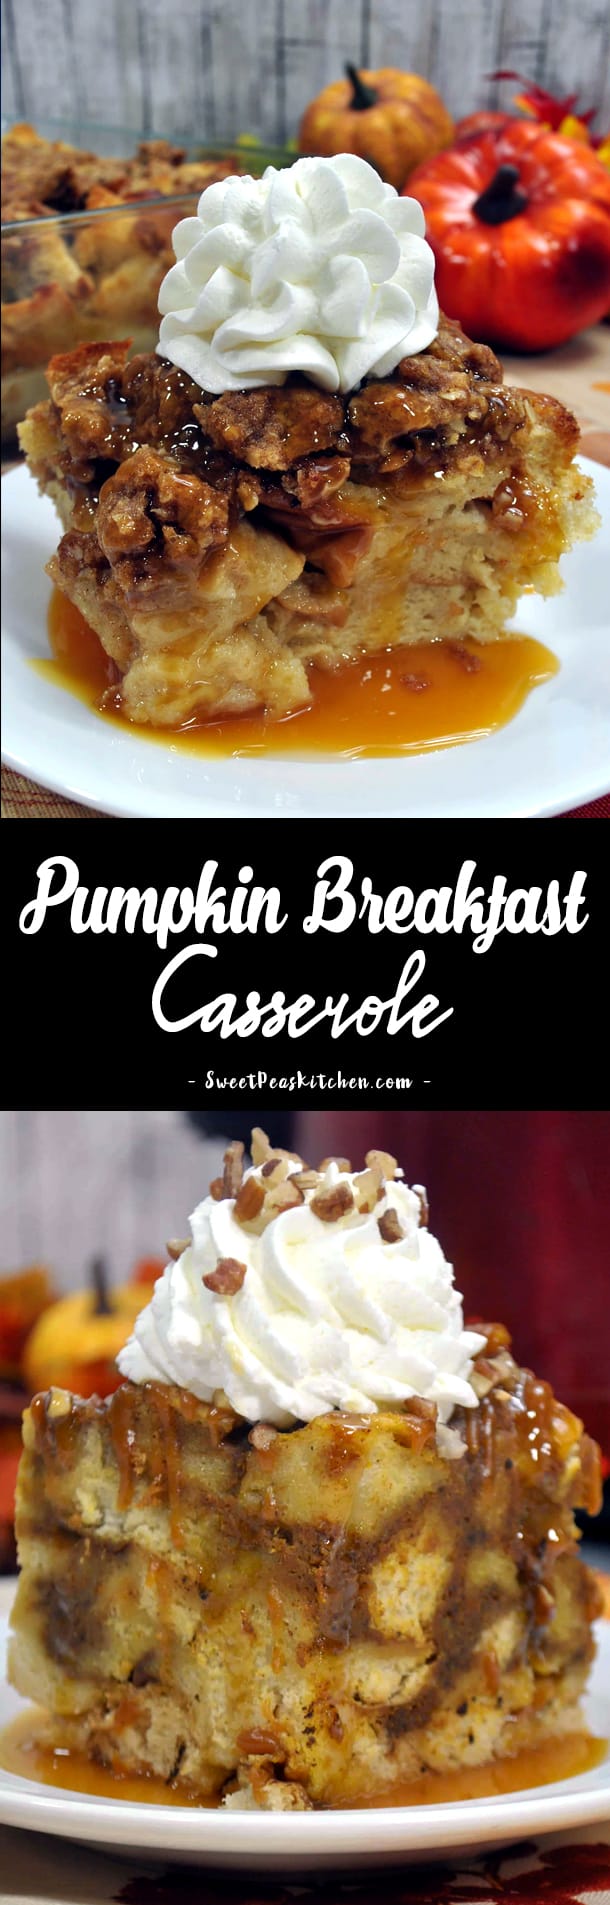 Pumpkin Breakfast Casserole